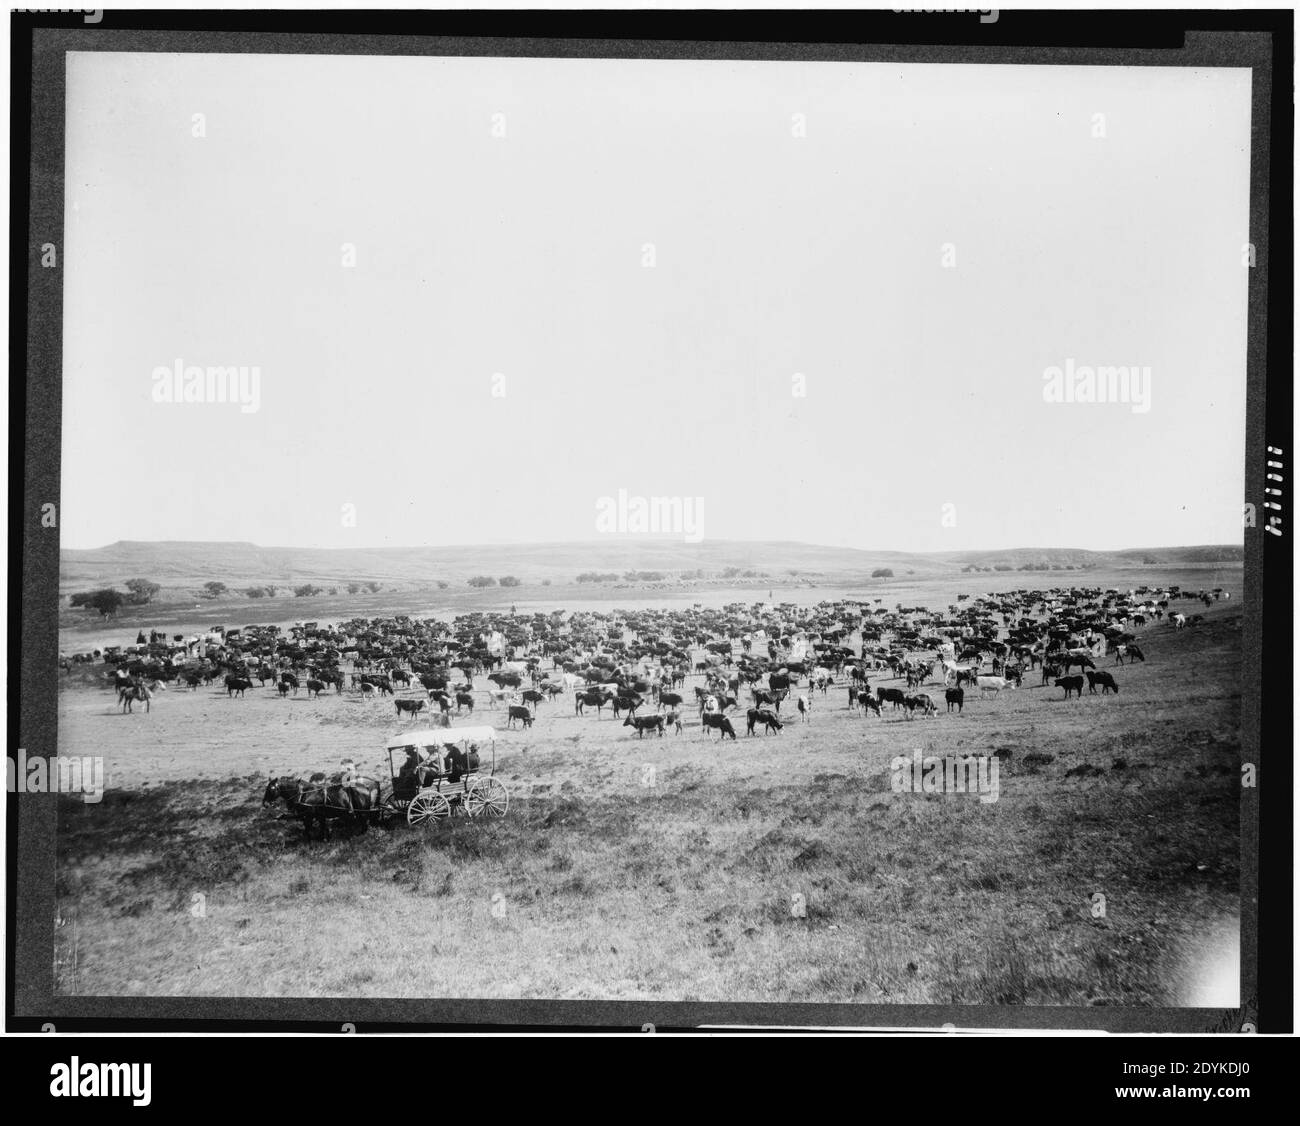 Große Herde von Rindern auf einem westlichen Bereich, wahrscheinlich in Colorado oder Utah, und vier Männer auf Wagen im Vordergrund) - F.M. Steele, Spezialfotograf, C.R.I. & P. Railway System Stockfoto